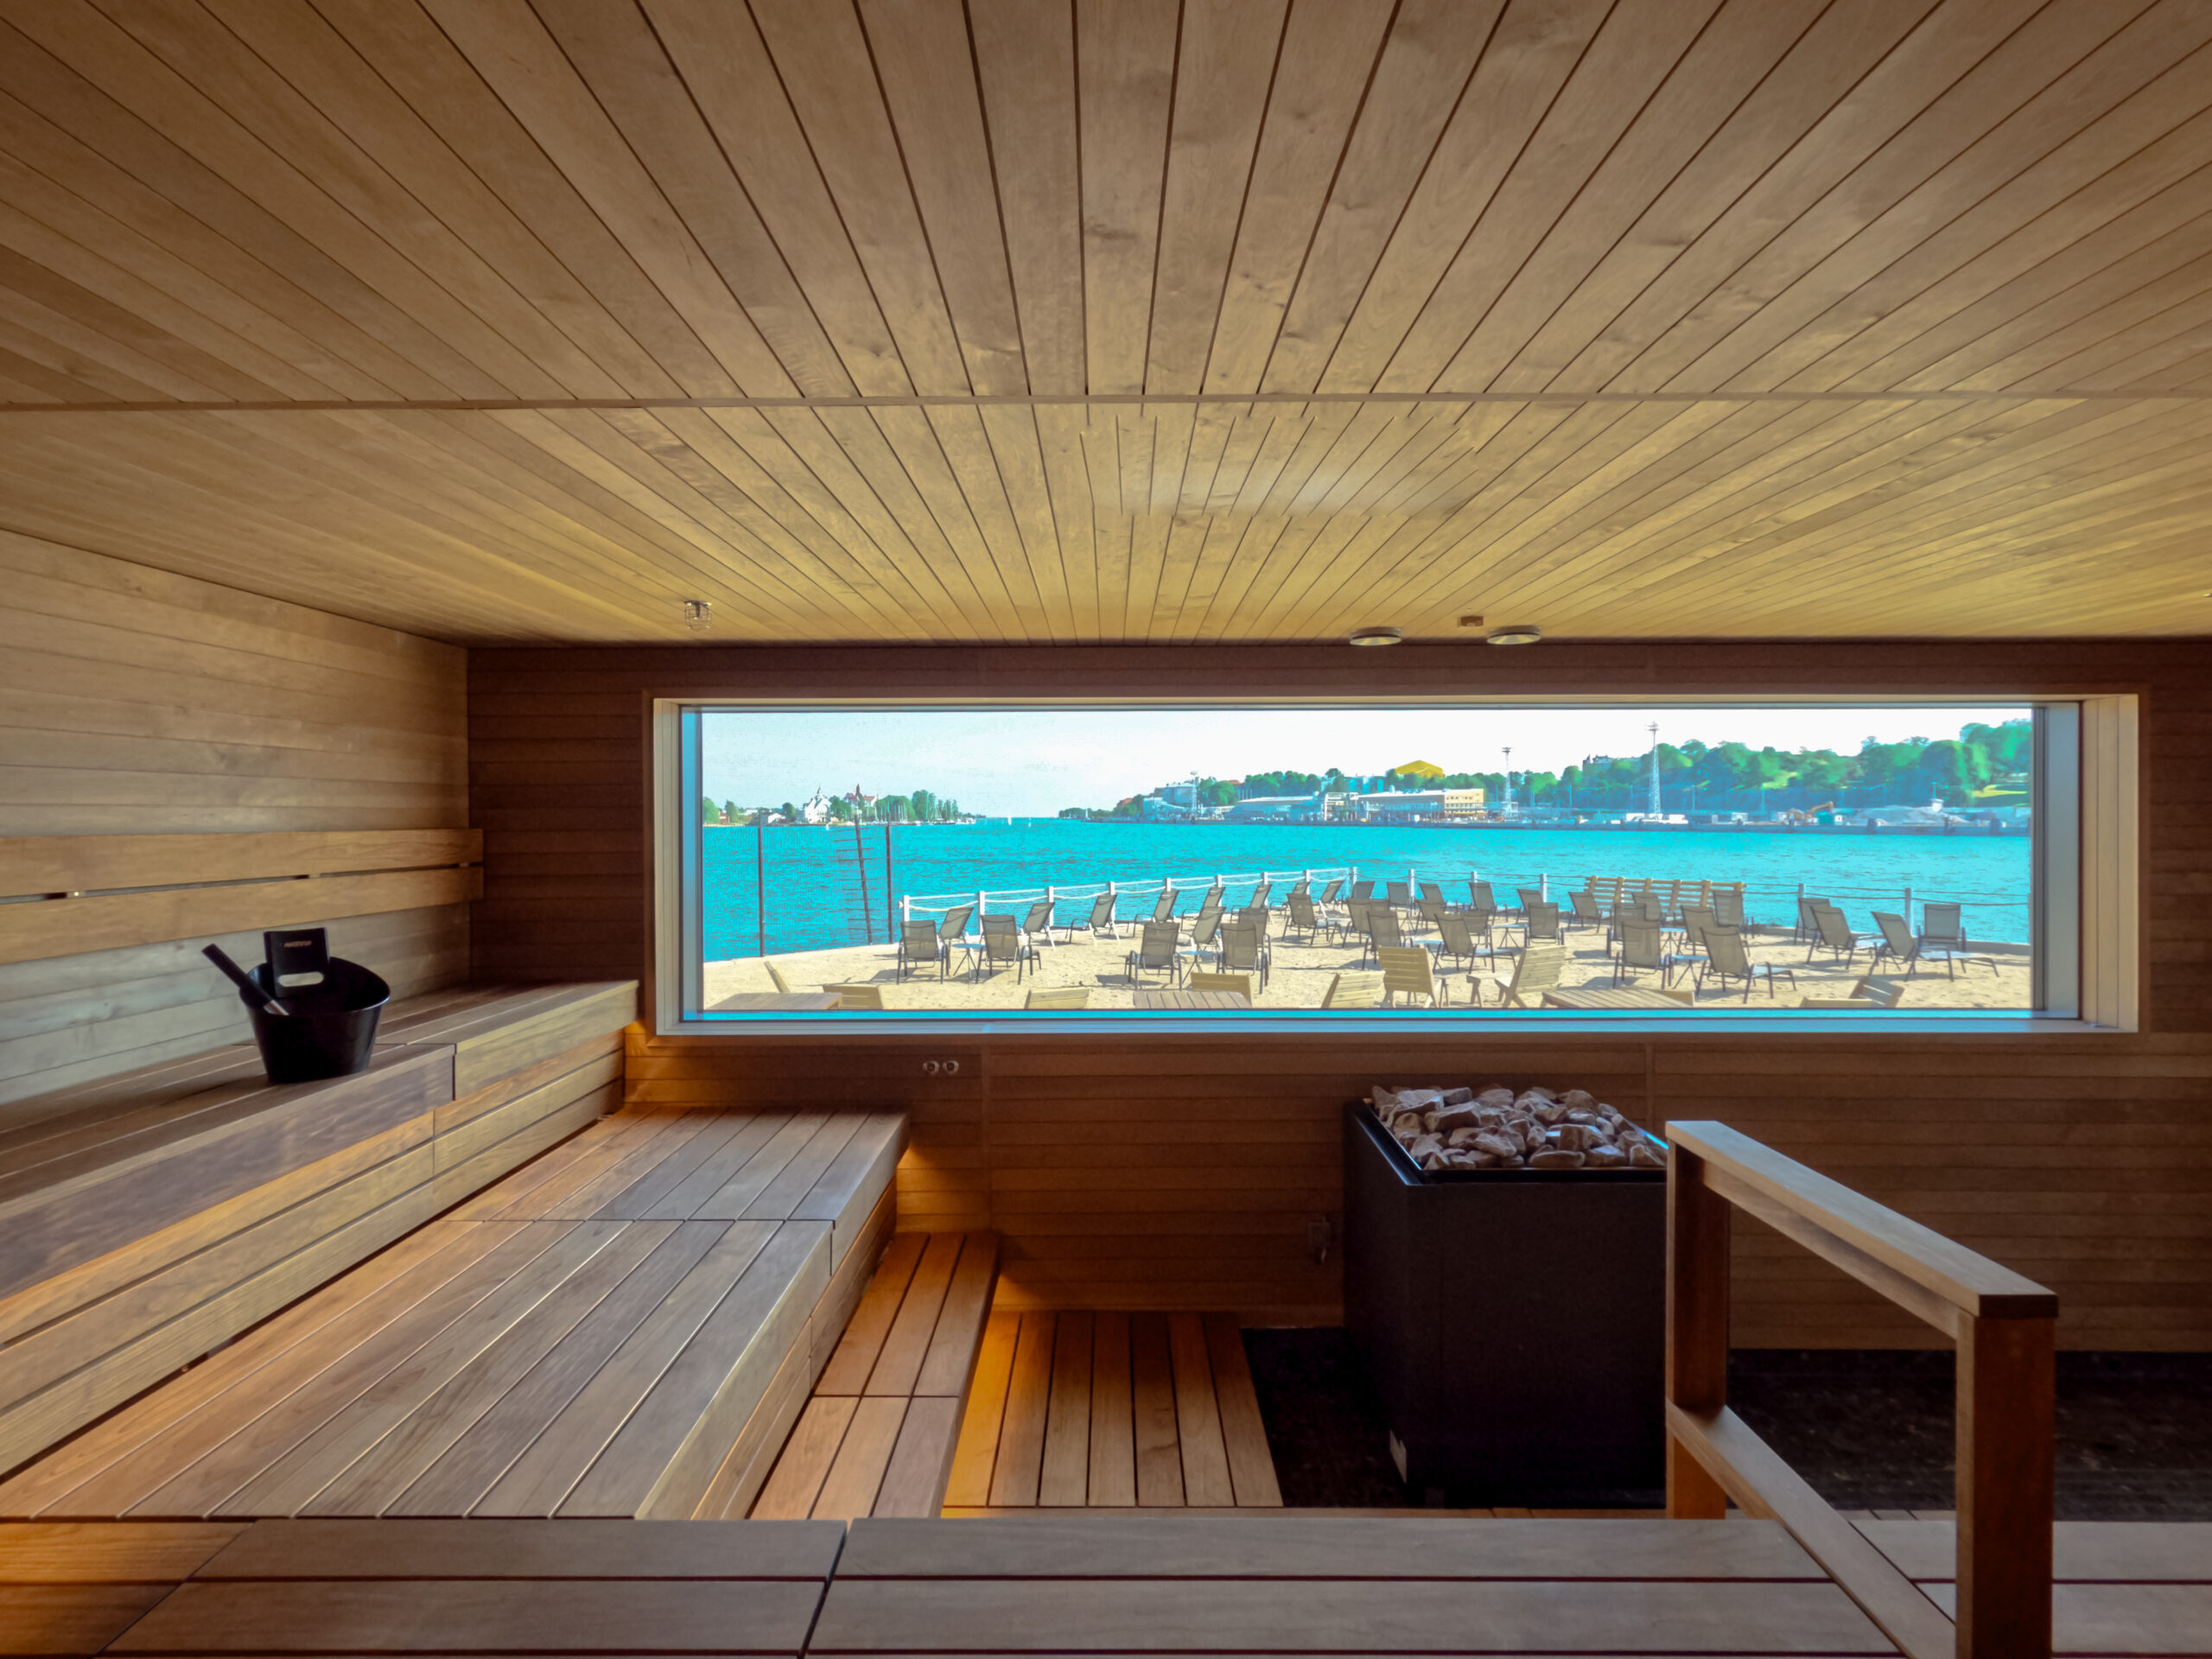 Allas Sea Pool and new Sauna world